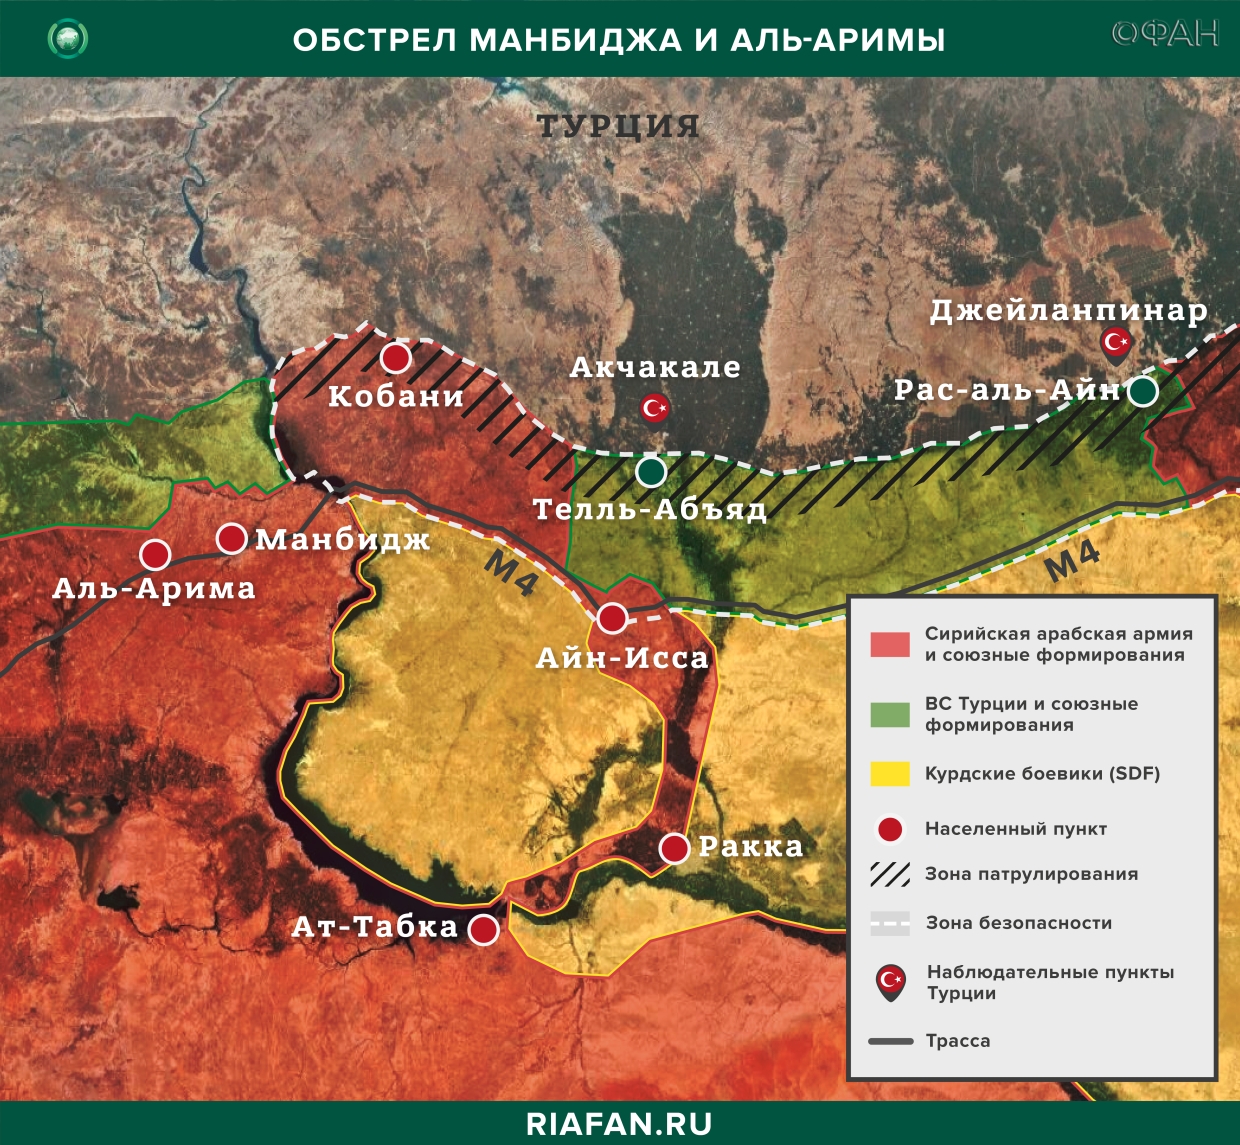 Digest syrien: résumés des événements en Syrie 2 mars à compter du 22.00